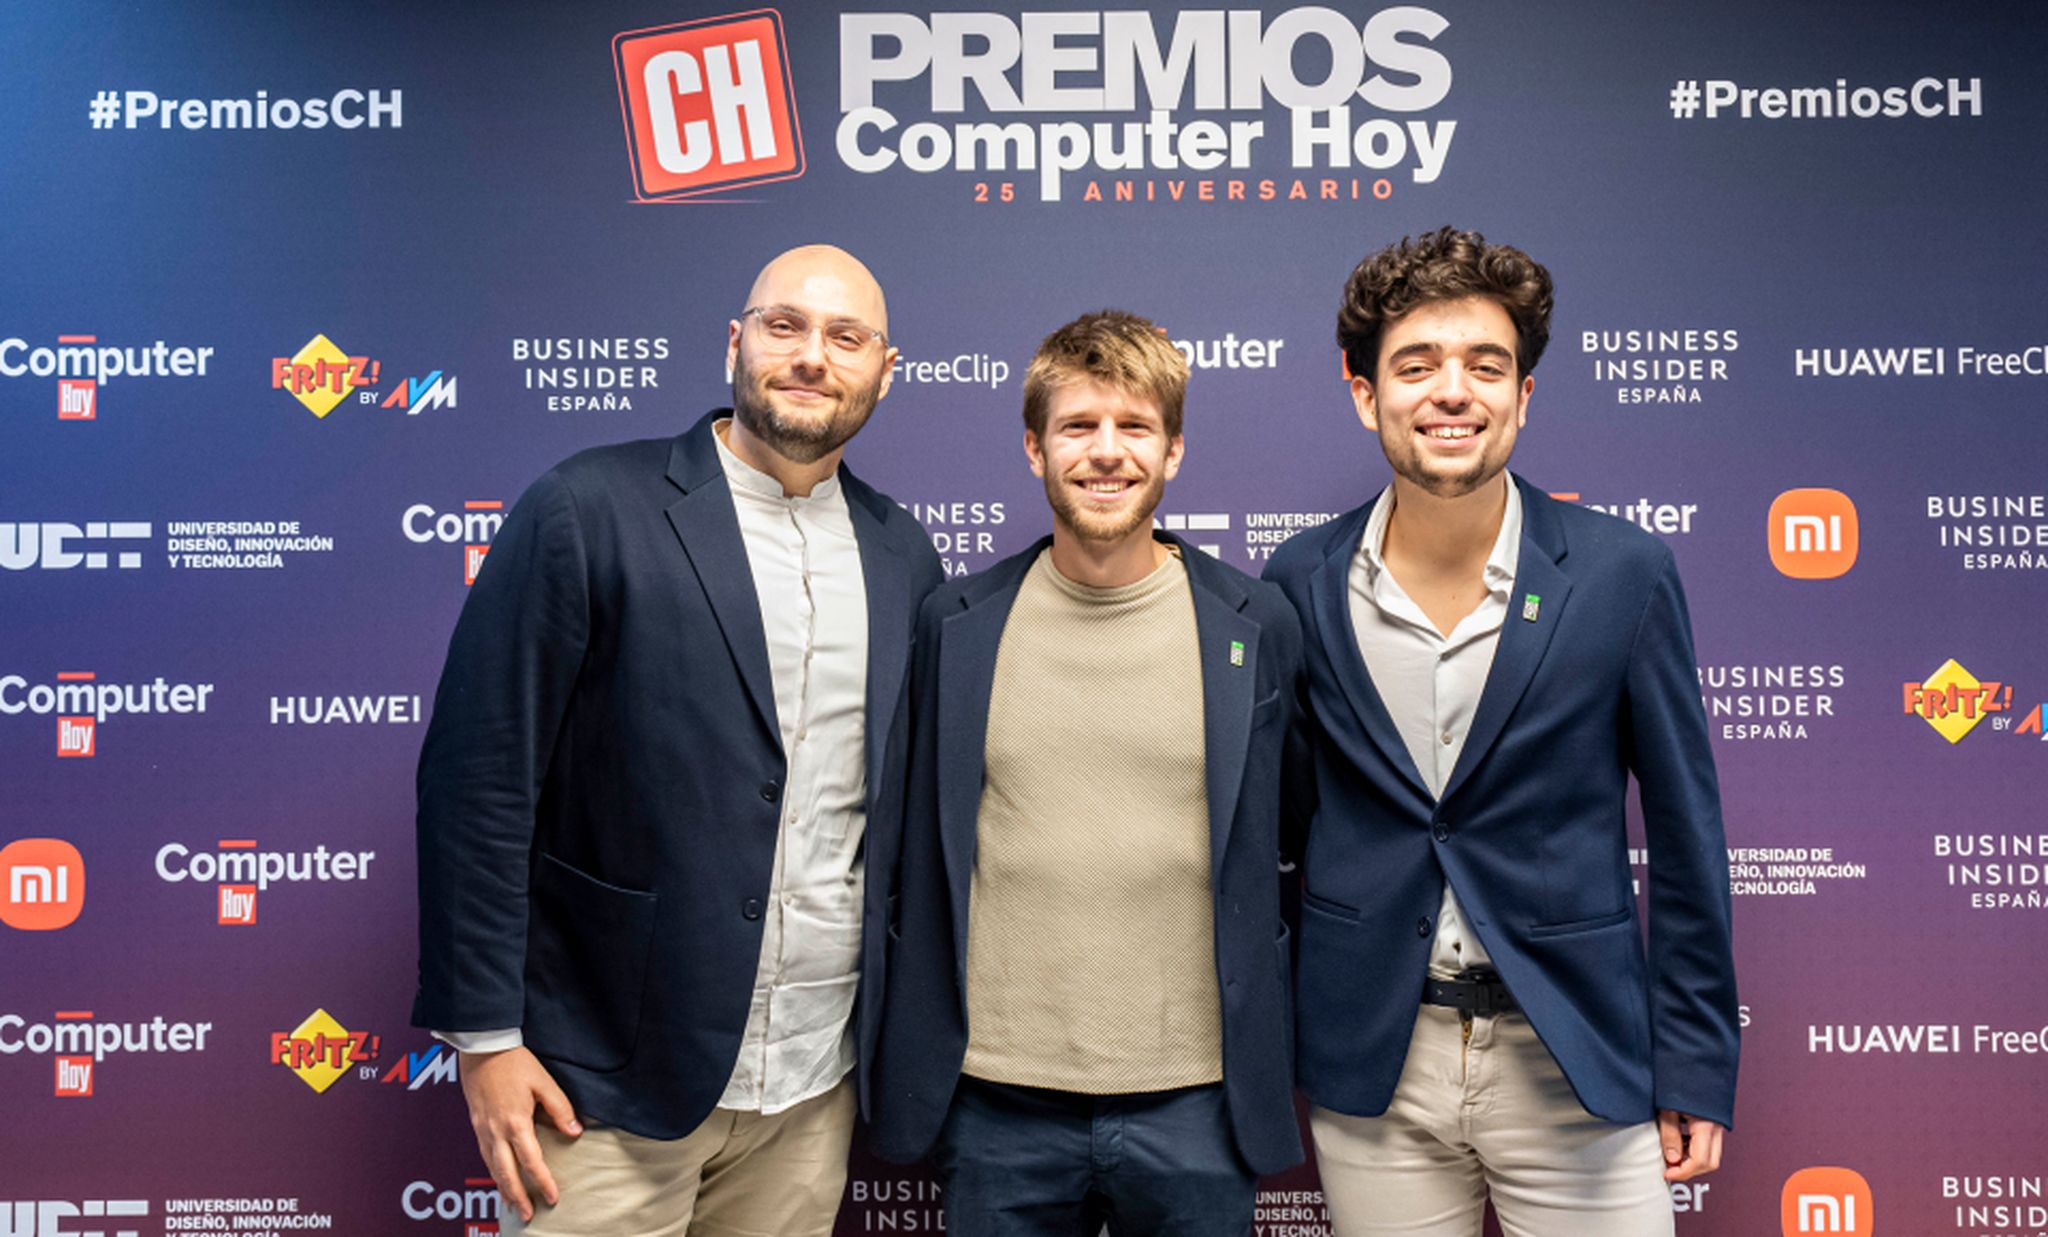 De izquierda a derecha: Manu Contreras, redactor de Tecnología en Axel Springer, junto a Jorge Terreu, CEO de Maximiliana, y Pedro Malo, CTO de Maximiliana.